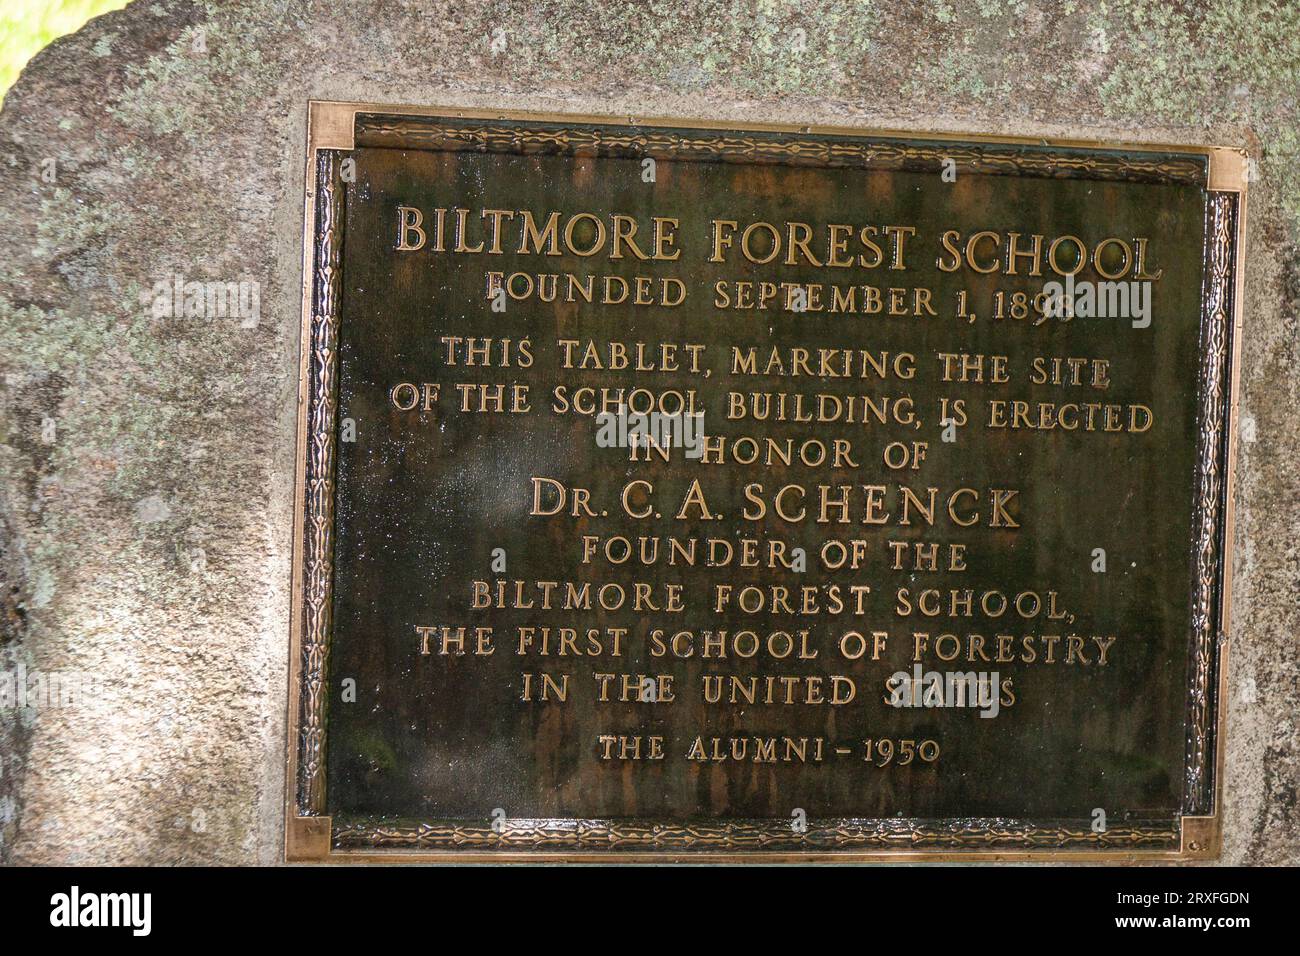 Baltimore Forest School, appelée le «berceau de la foresterie», dans la forêt nationale de Pisgah en Caroline du Nord. Ce fut la première école forestière aux États-Unis. Banque D'Images